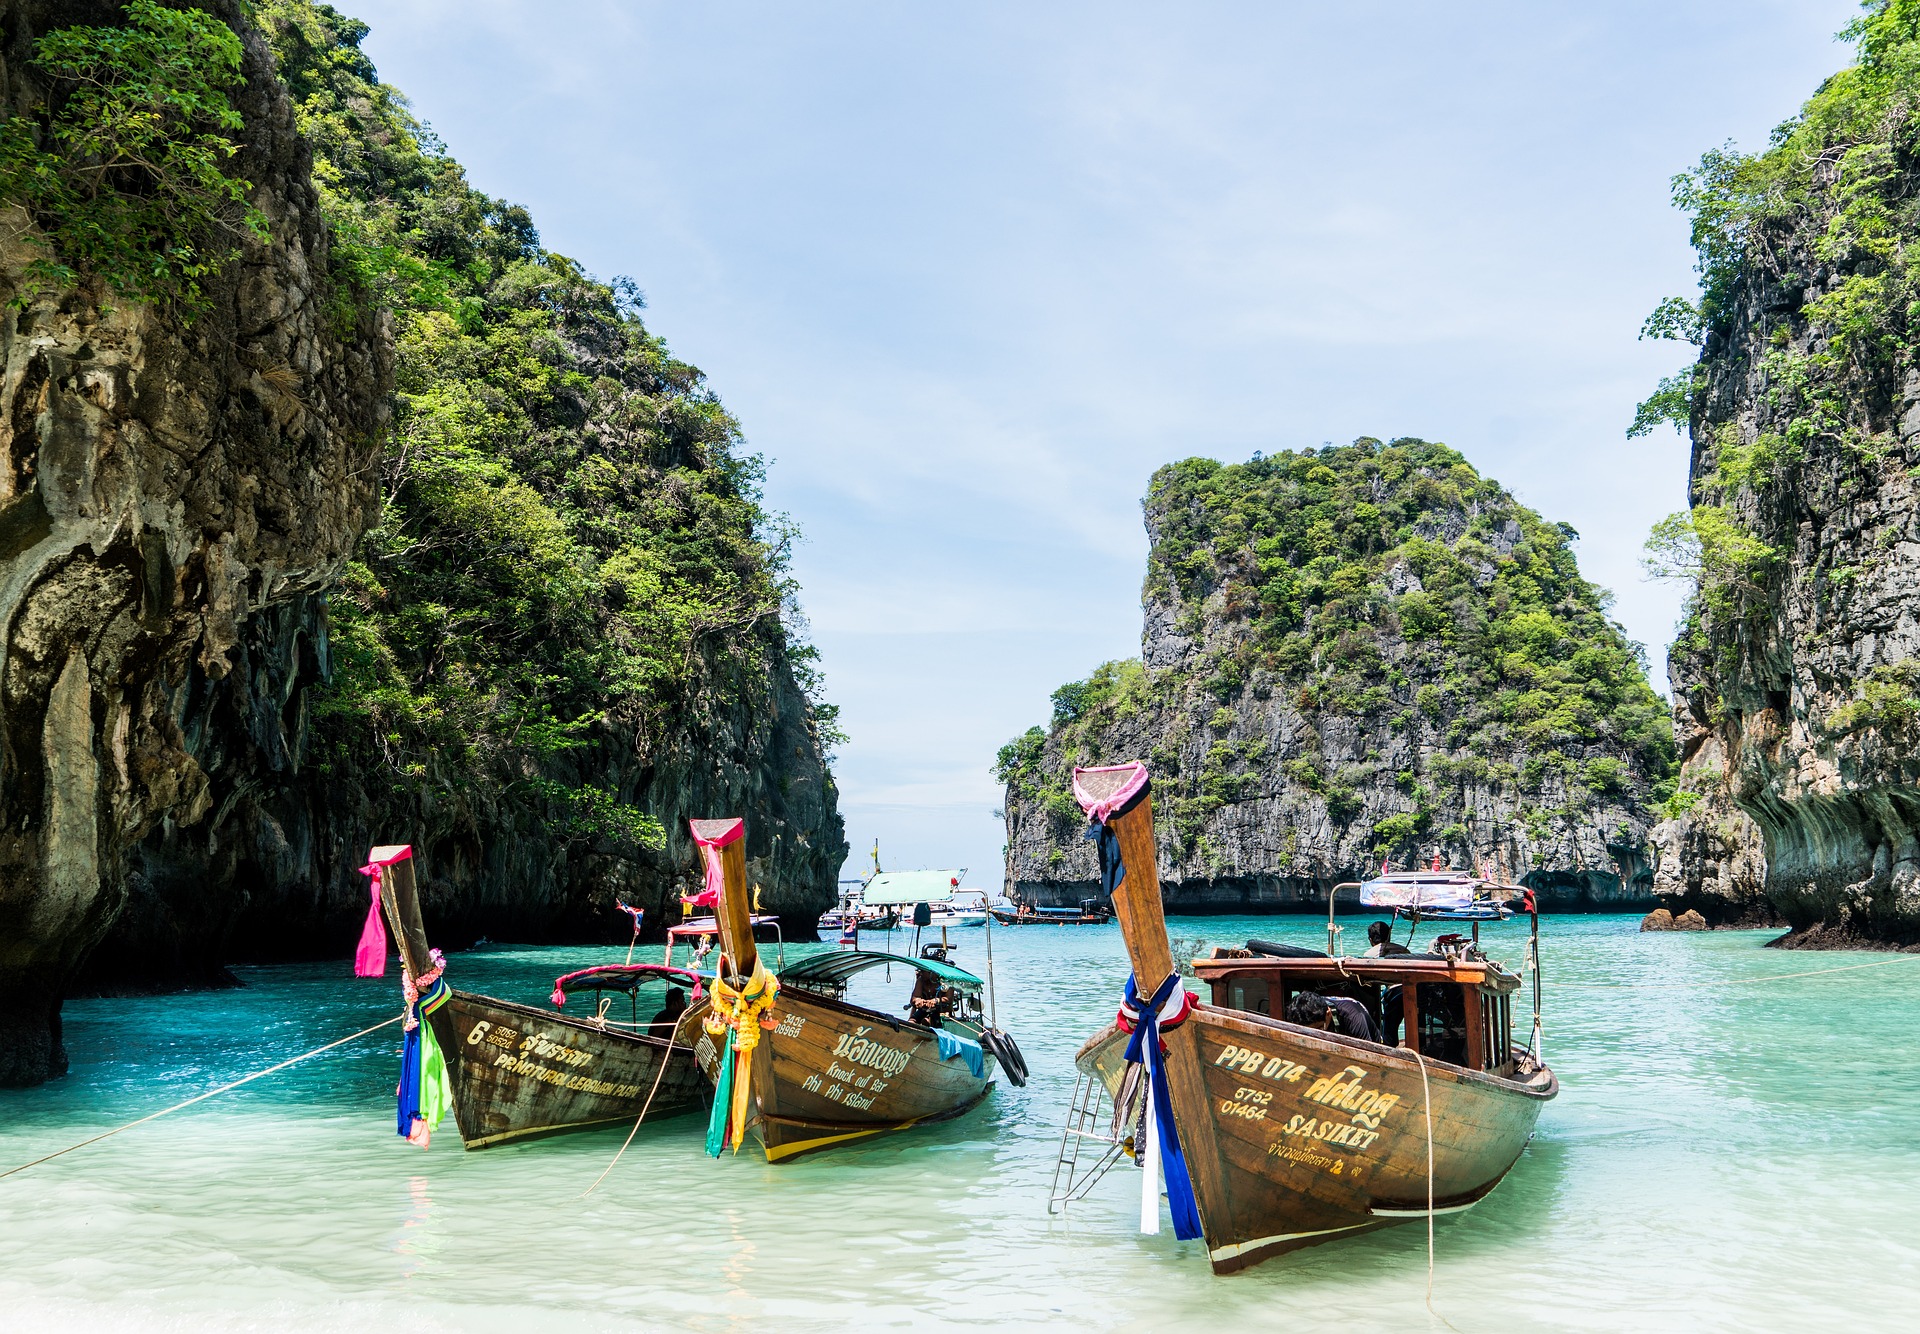 Пхукет – жемчужина пляжного отдыха в Таиланде